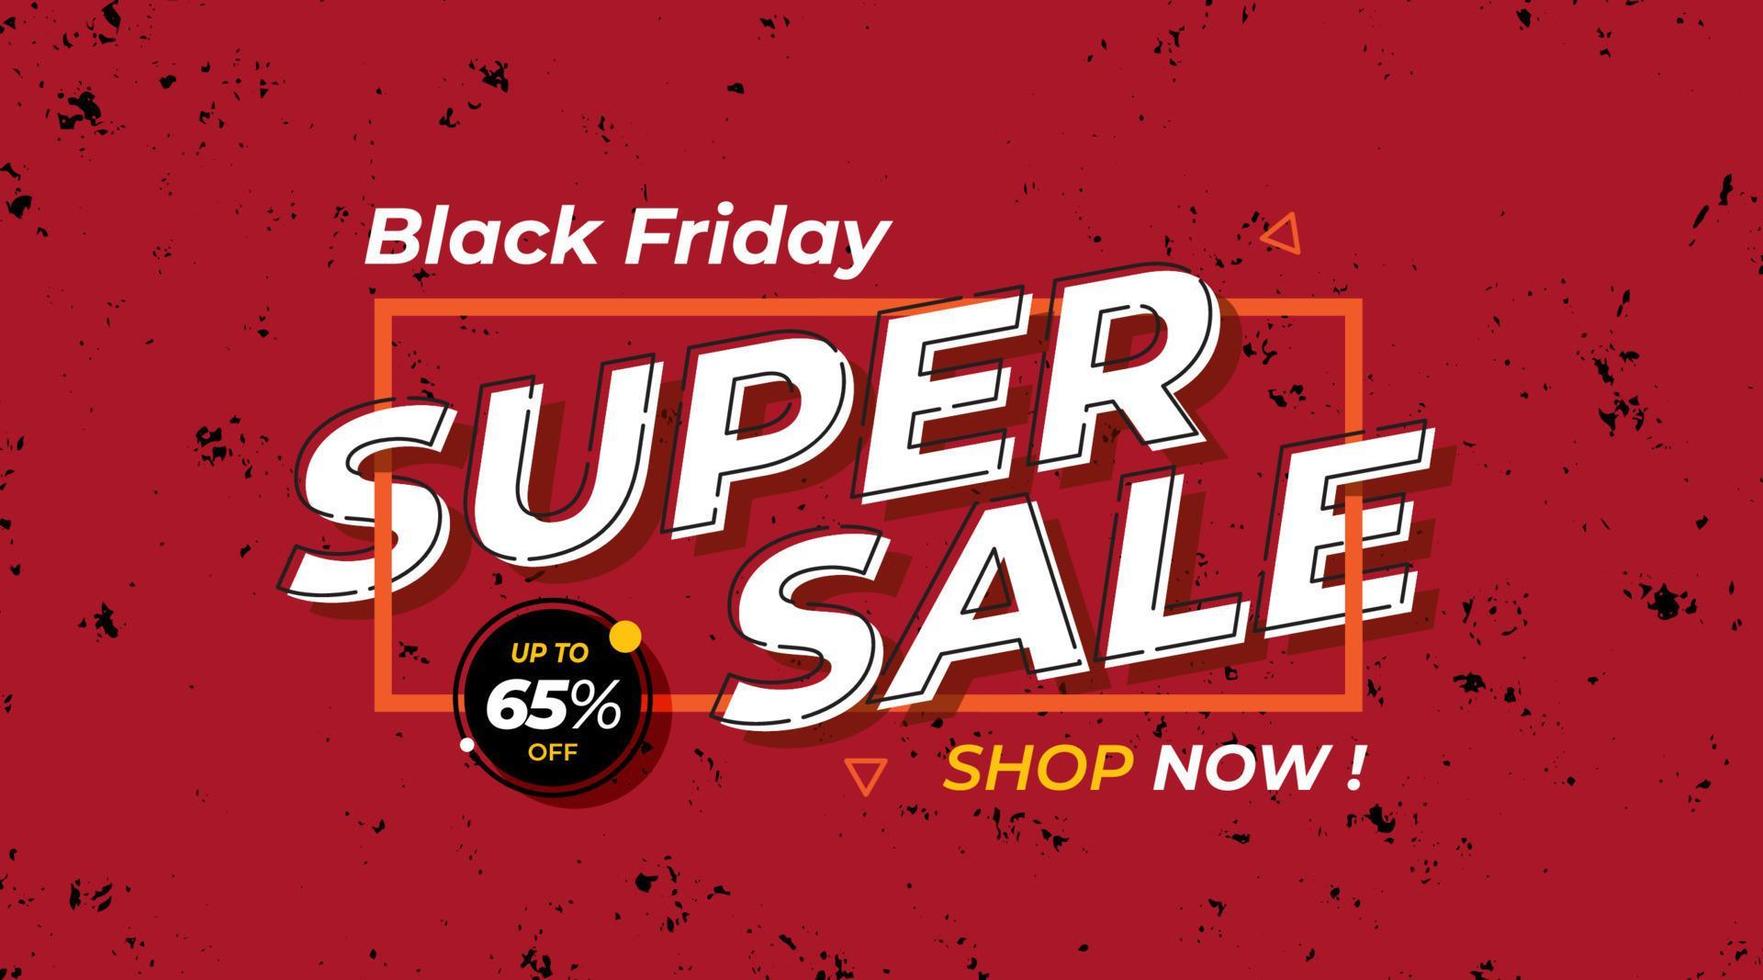 banner de super venta, banner de venta de viernes negro, plantilla de banner de mega venta vector